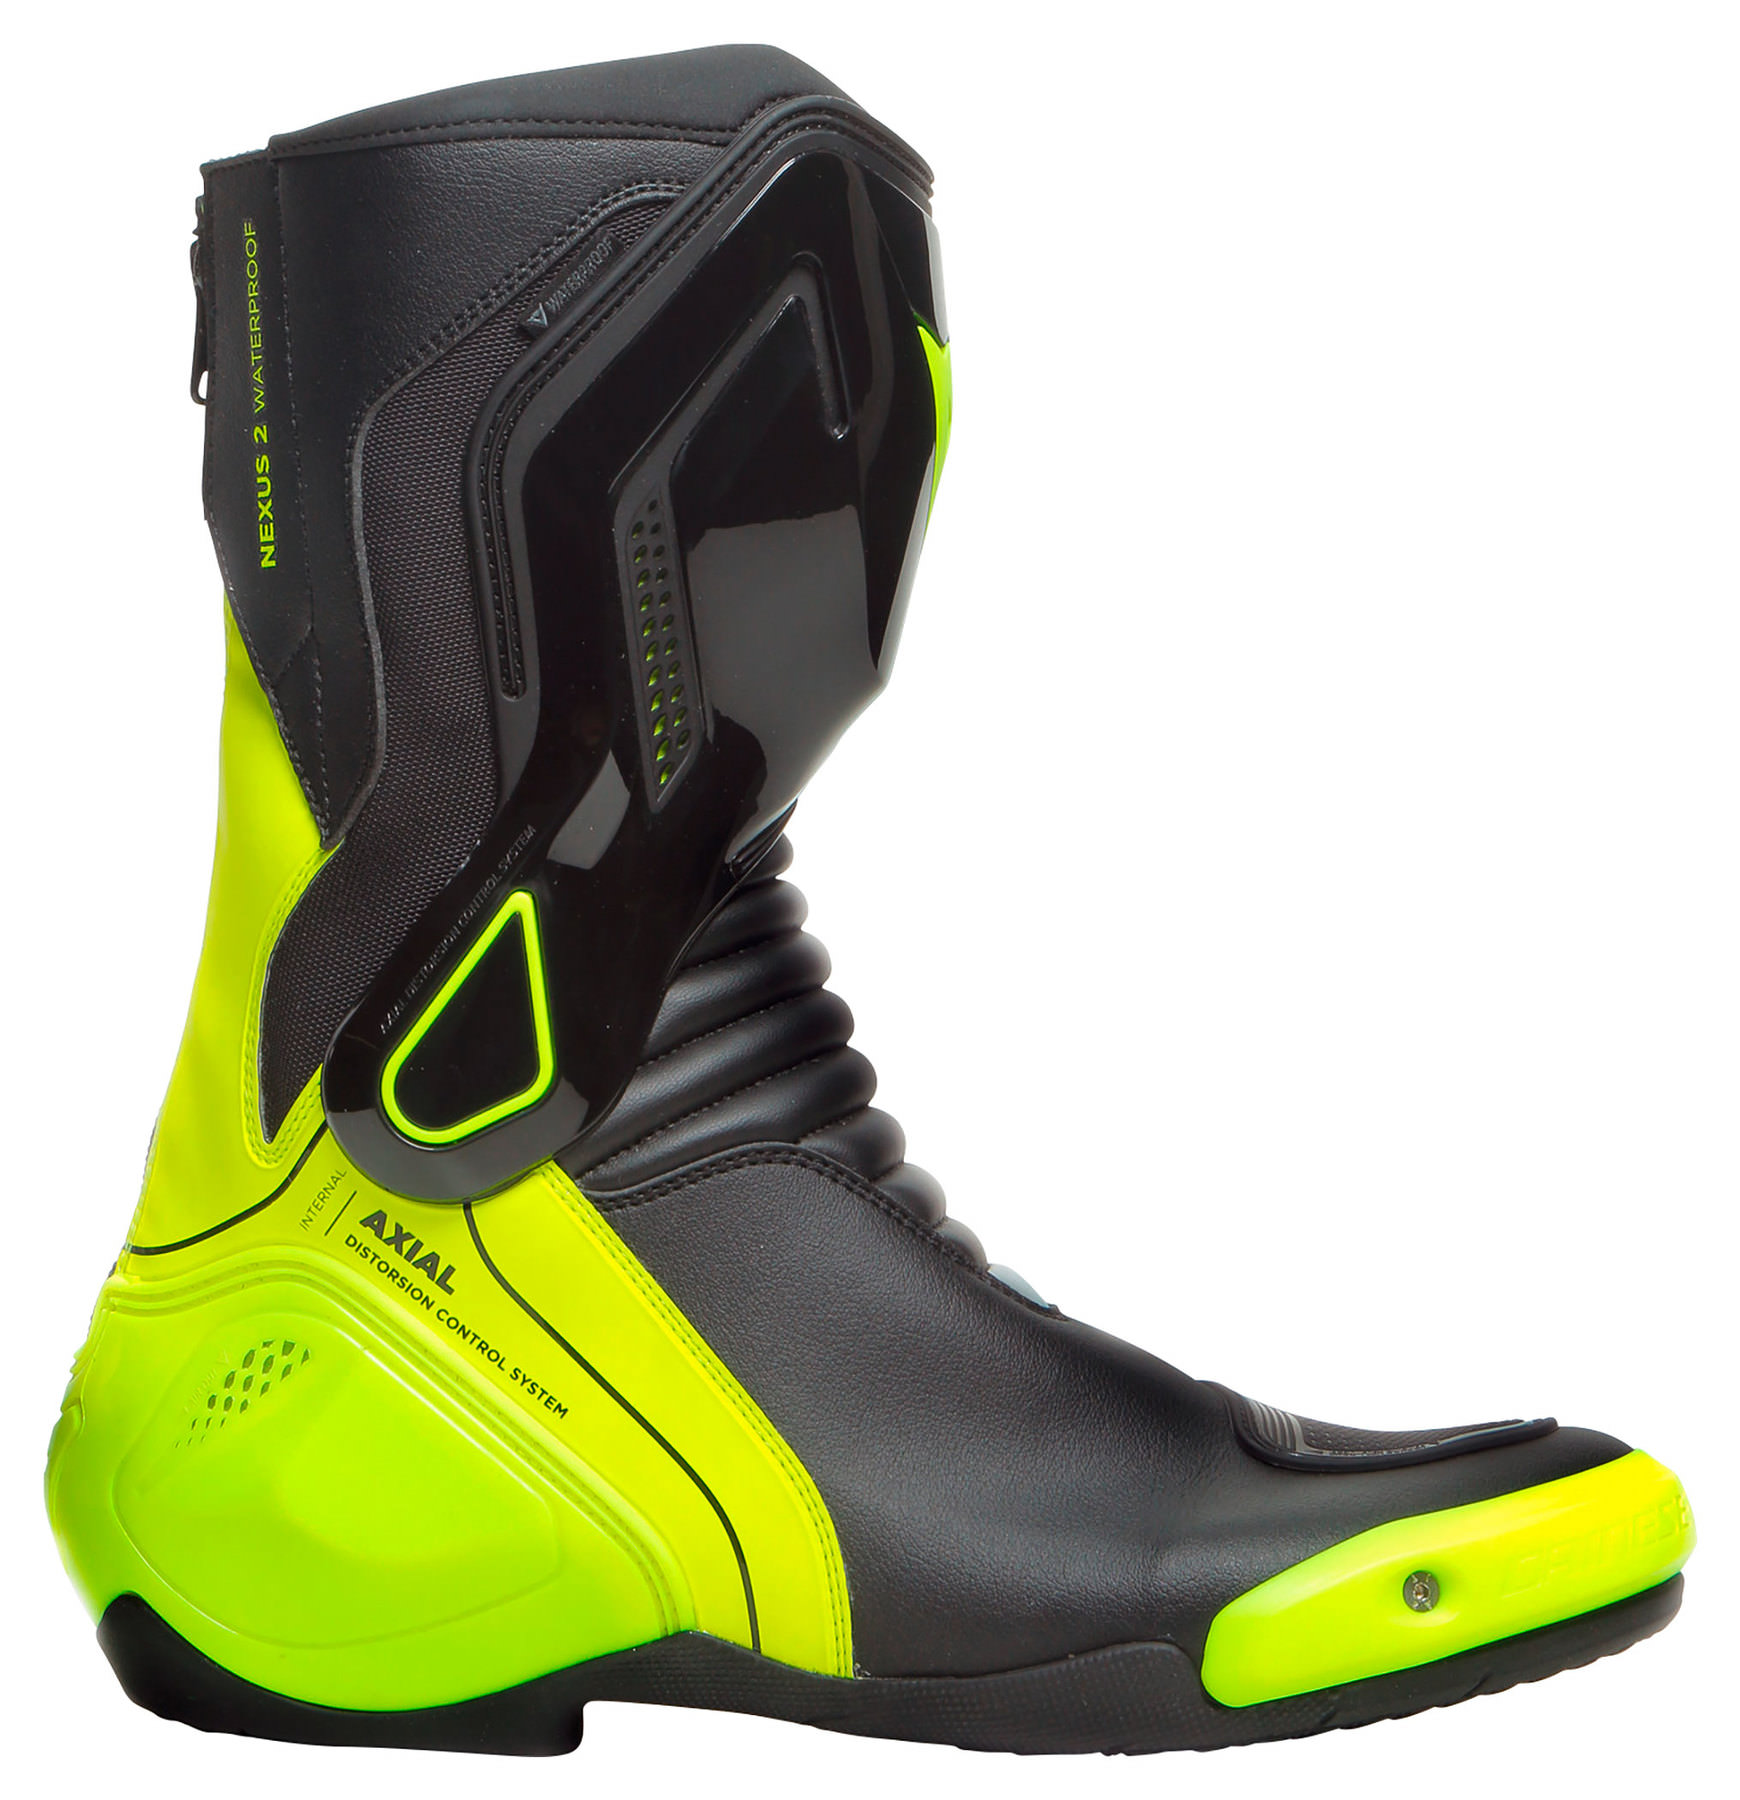 nexus boots